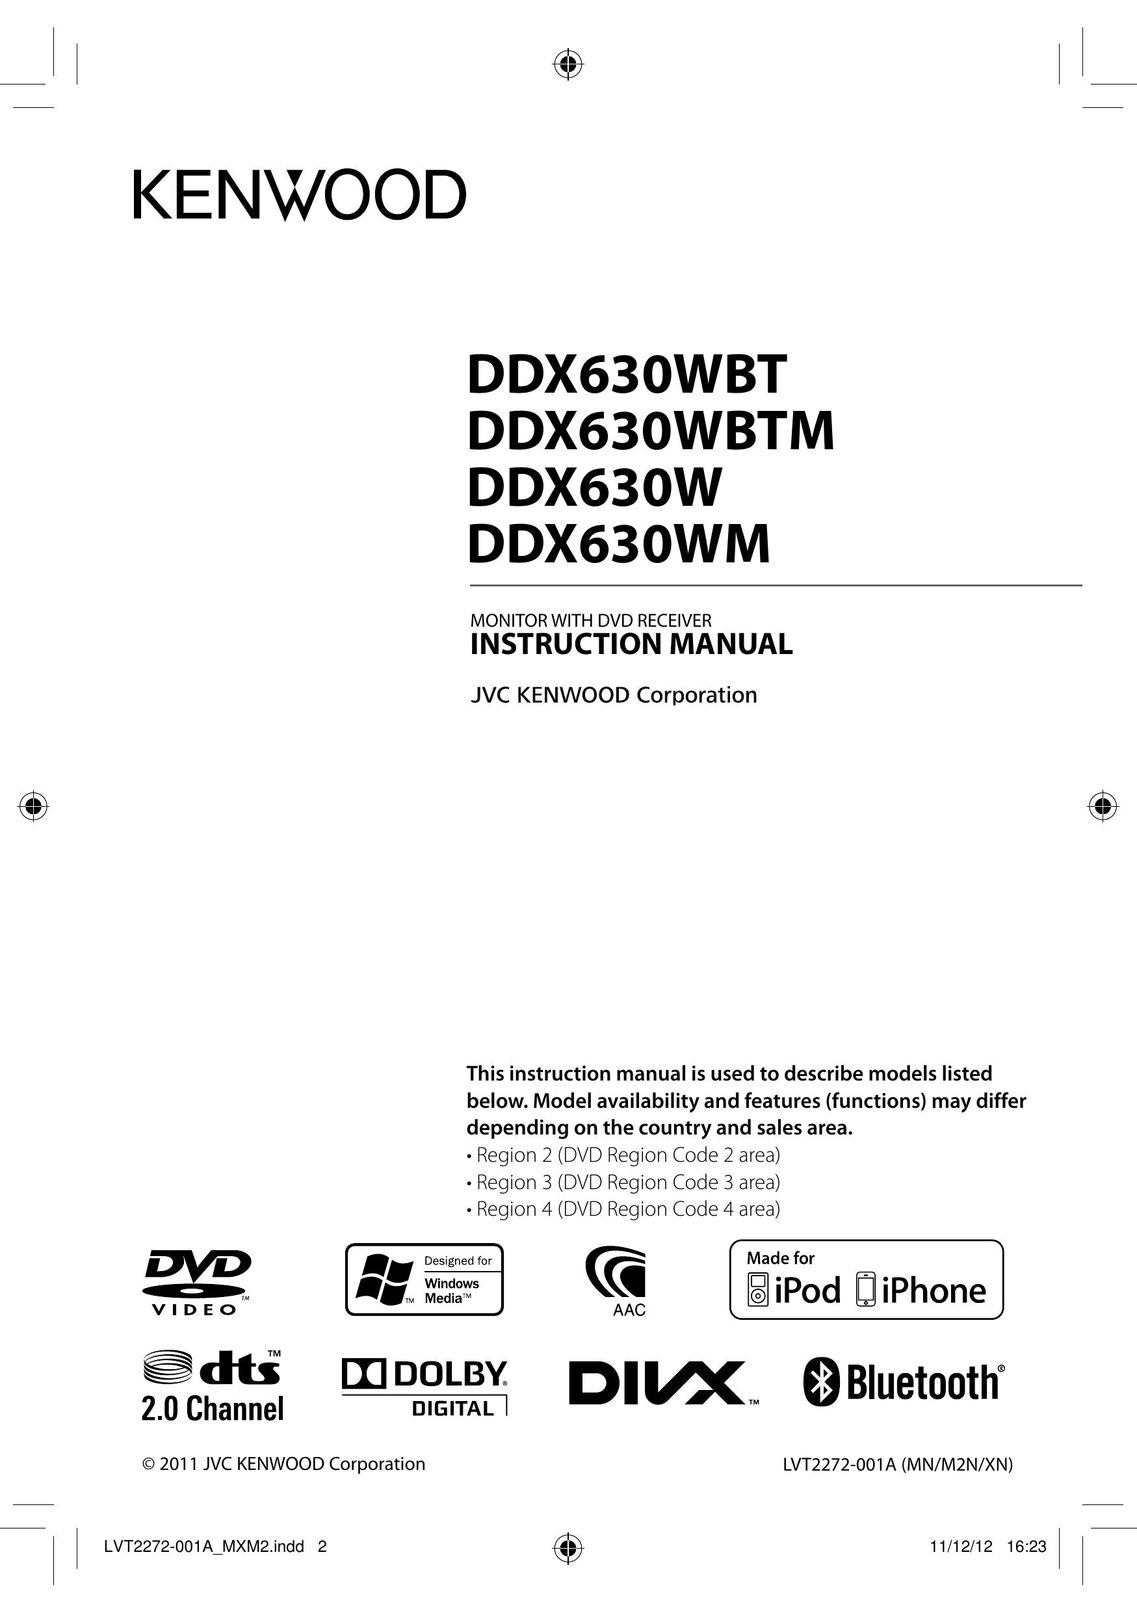 Kenwood DDX630WBT Car Video System User Manual